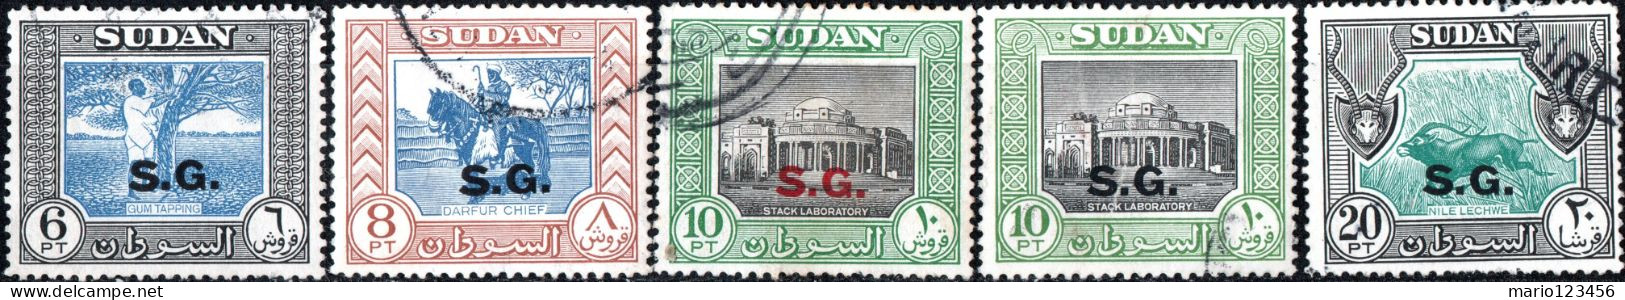 SUDAN BRITANNICO, SUDAN, PAESAGGI, LANDSCAPE, 1951, FRANCOBOLLI USATI Scott:SD O56-O59,O61 - Soudan (...-1951)